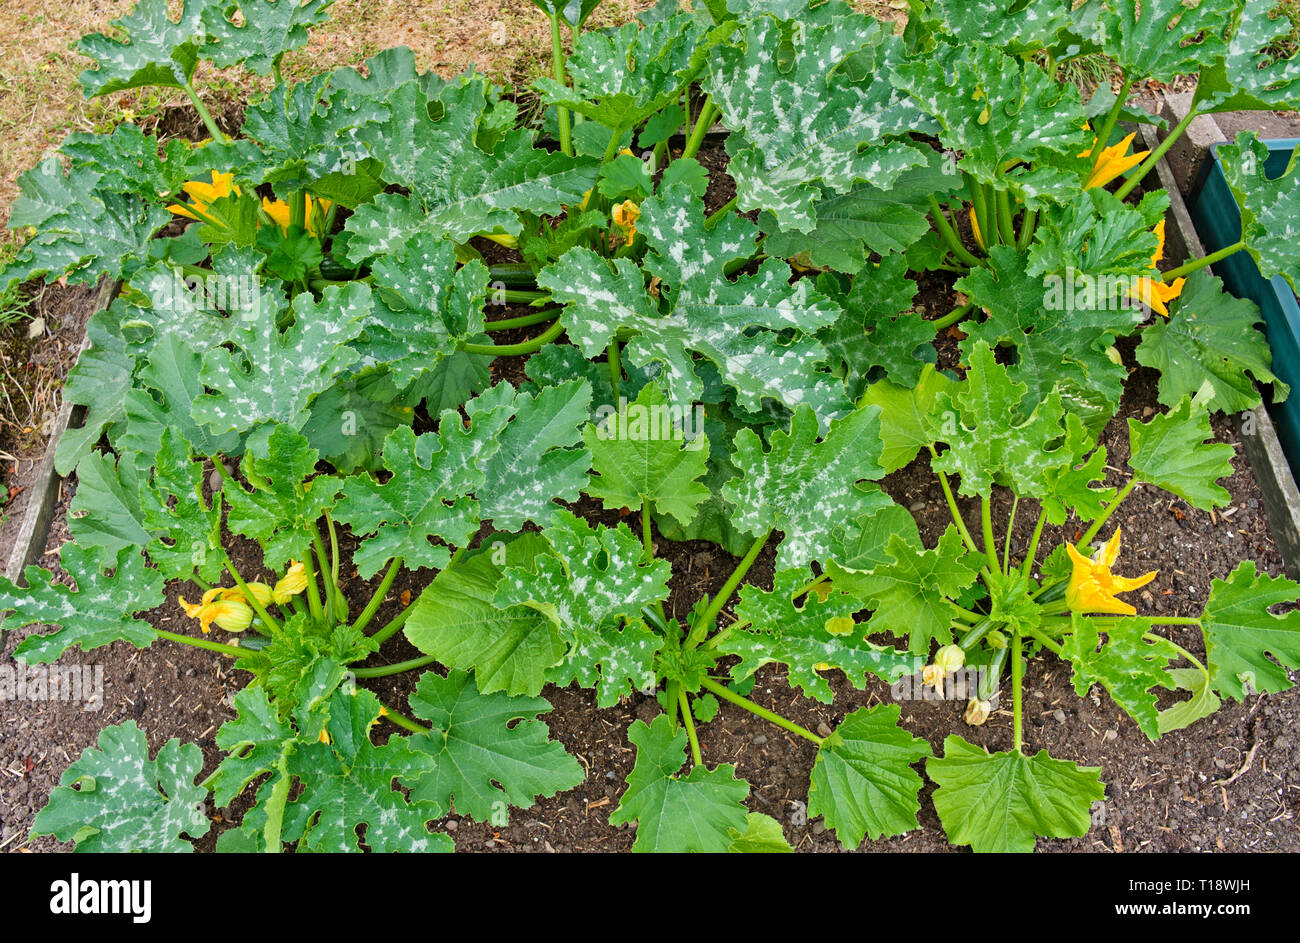 Junge Zucchini Pflanzen sorte F1 Defender in angehobener Bett in Englisch Gemüsegarten wächst, in Blume mit ersten kleinen Zucchini Sommer Großbritannien kommenden Stockfoto